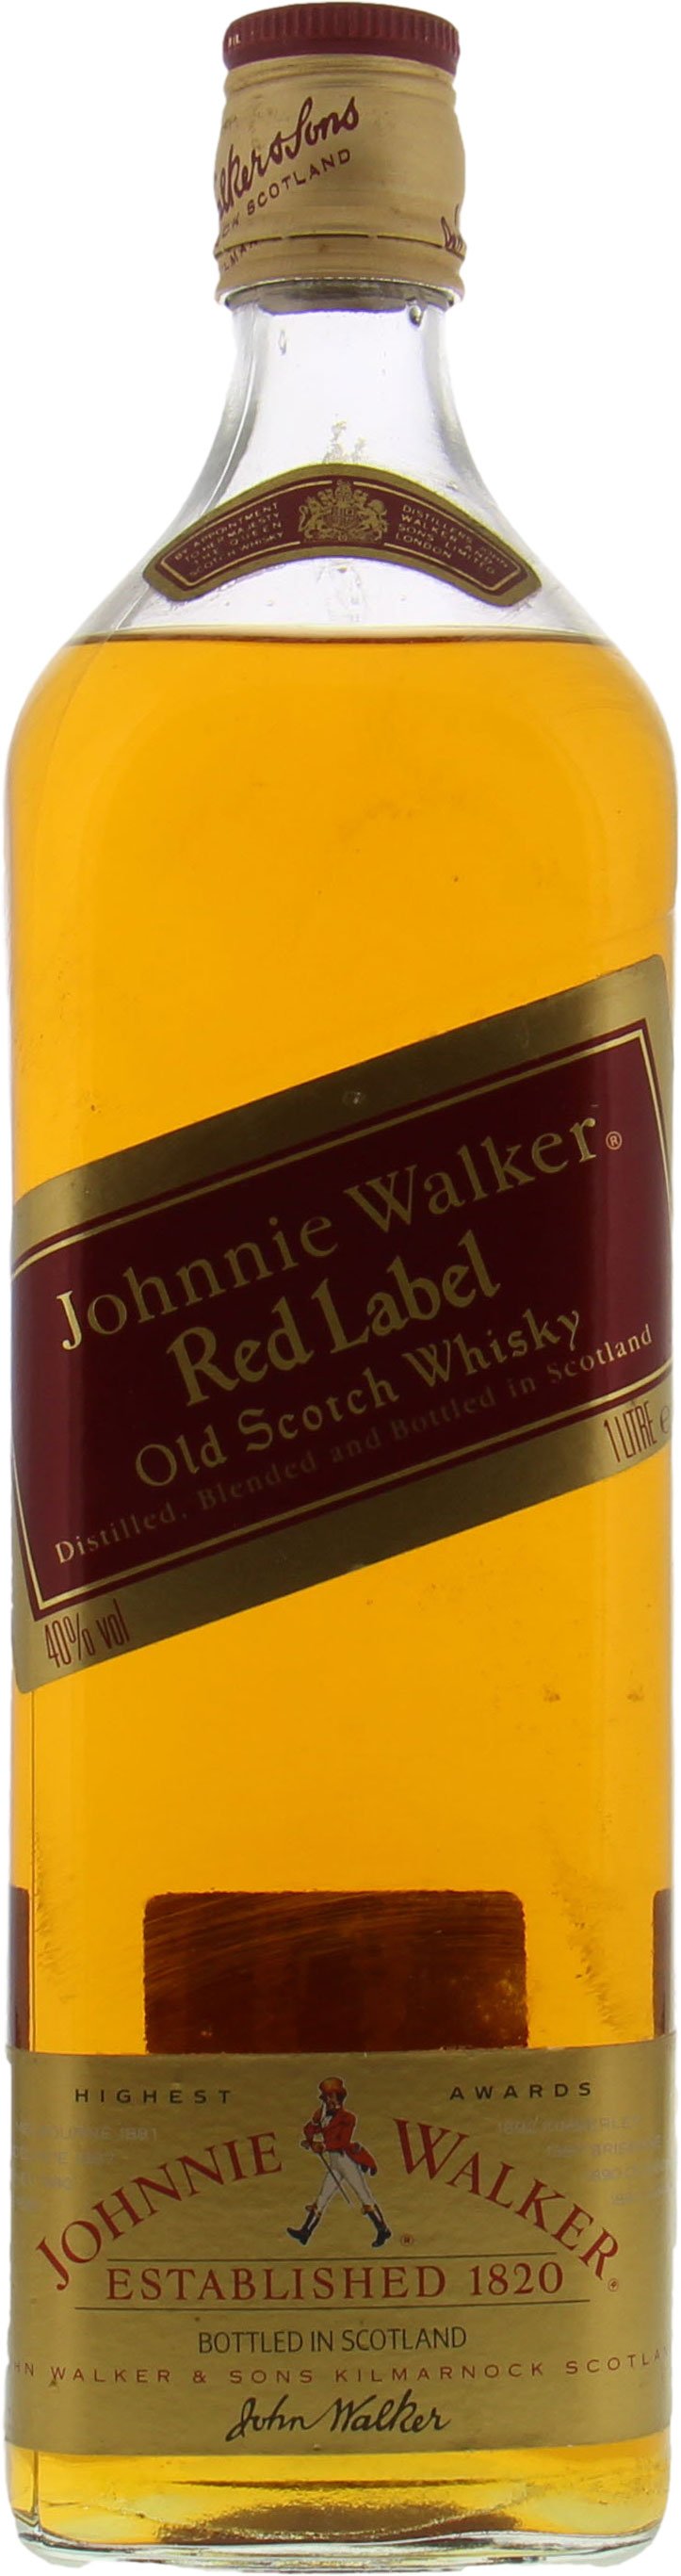 Johnnie Walker - Old Scotch Whisky Vintage Bottle 43% NV Perfect